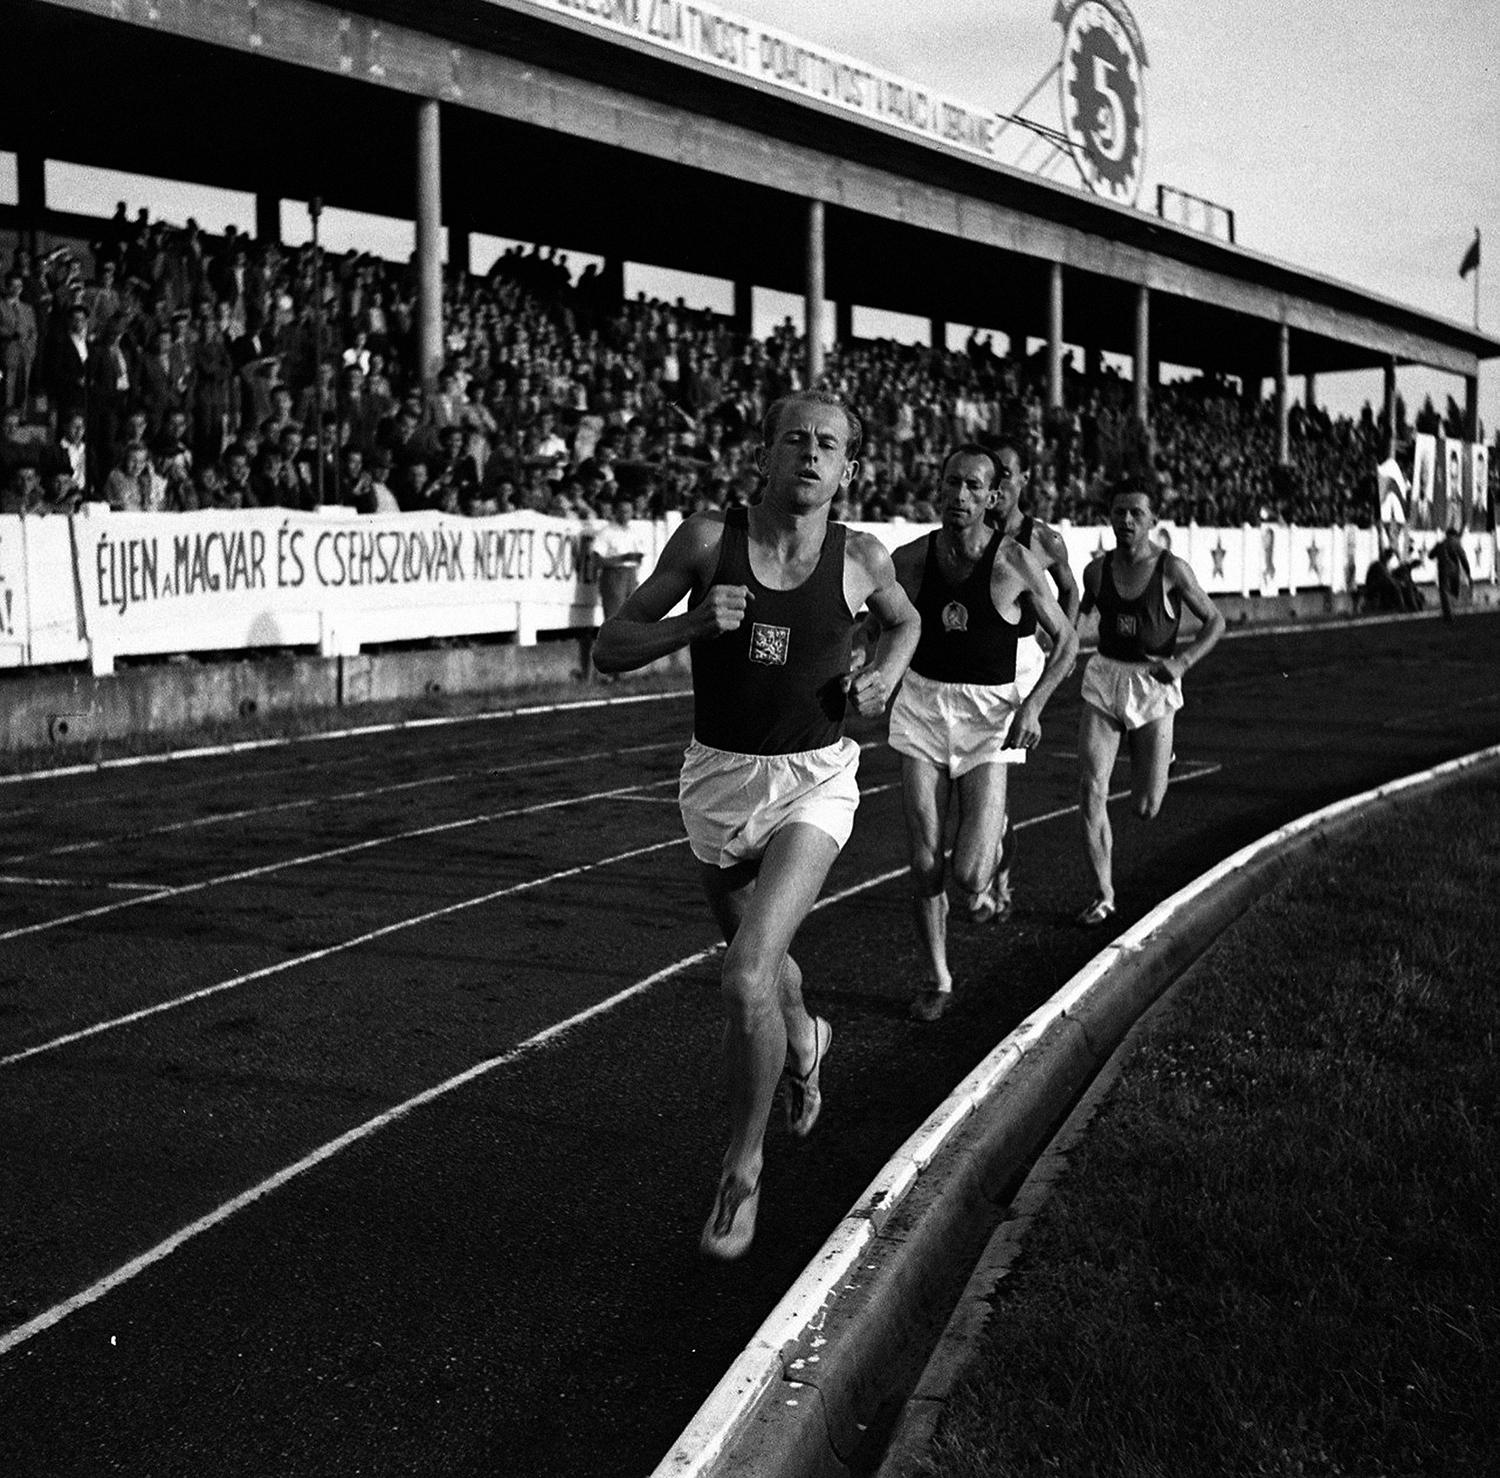 8. júl 1950 Bratislava: Emil Zátopek na čele pretekárov v behu na 10 000 m počas ľahkoatletického stretnutia ČSR – Maďarsko. Bol prvým človekom na svete, ktorý zabehol 10 km pod 29 minút a 20 km pod jednu hodinu.